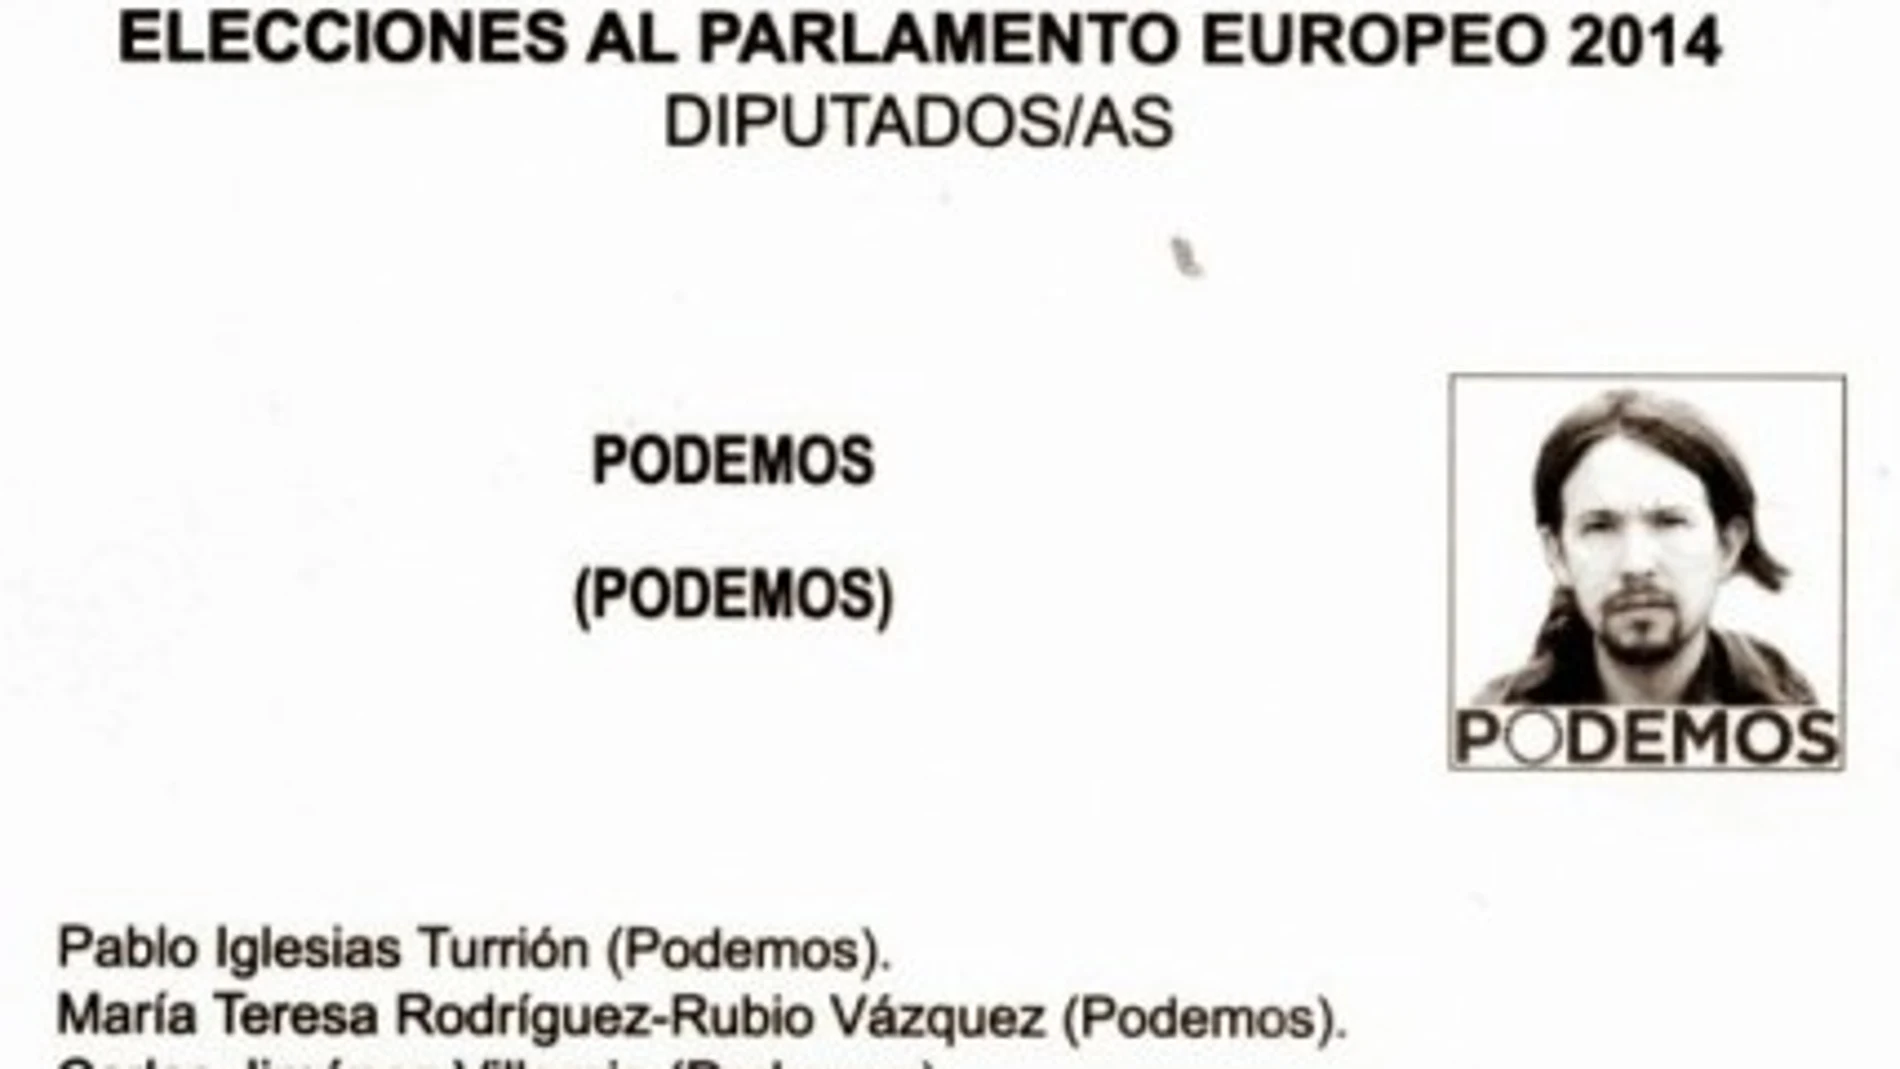 PAPELETA ELECTORAL DE PODEMOS Y PABLO IGLESIAS EN LAS ELECCIONES AL PARLAMENTO EUROPEO 2014 